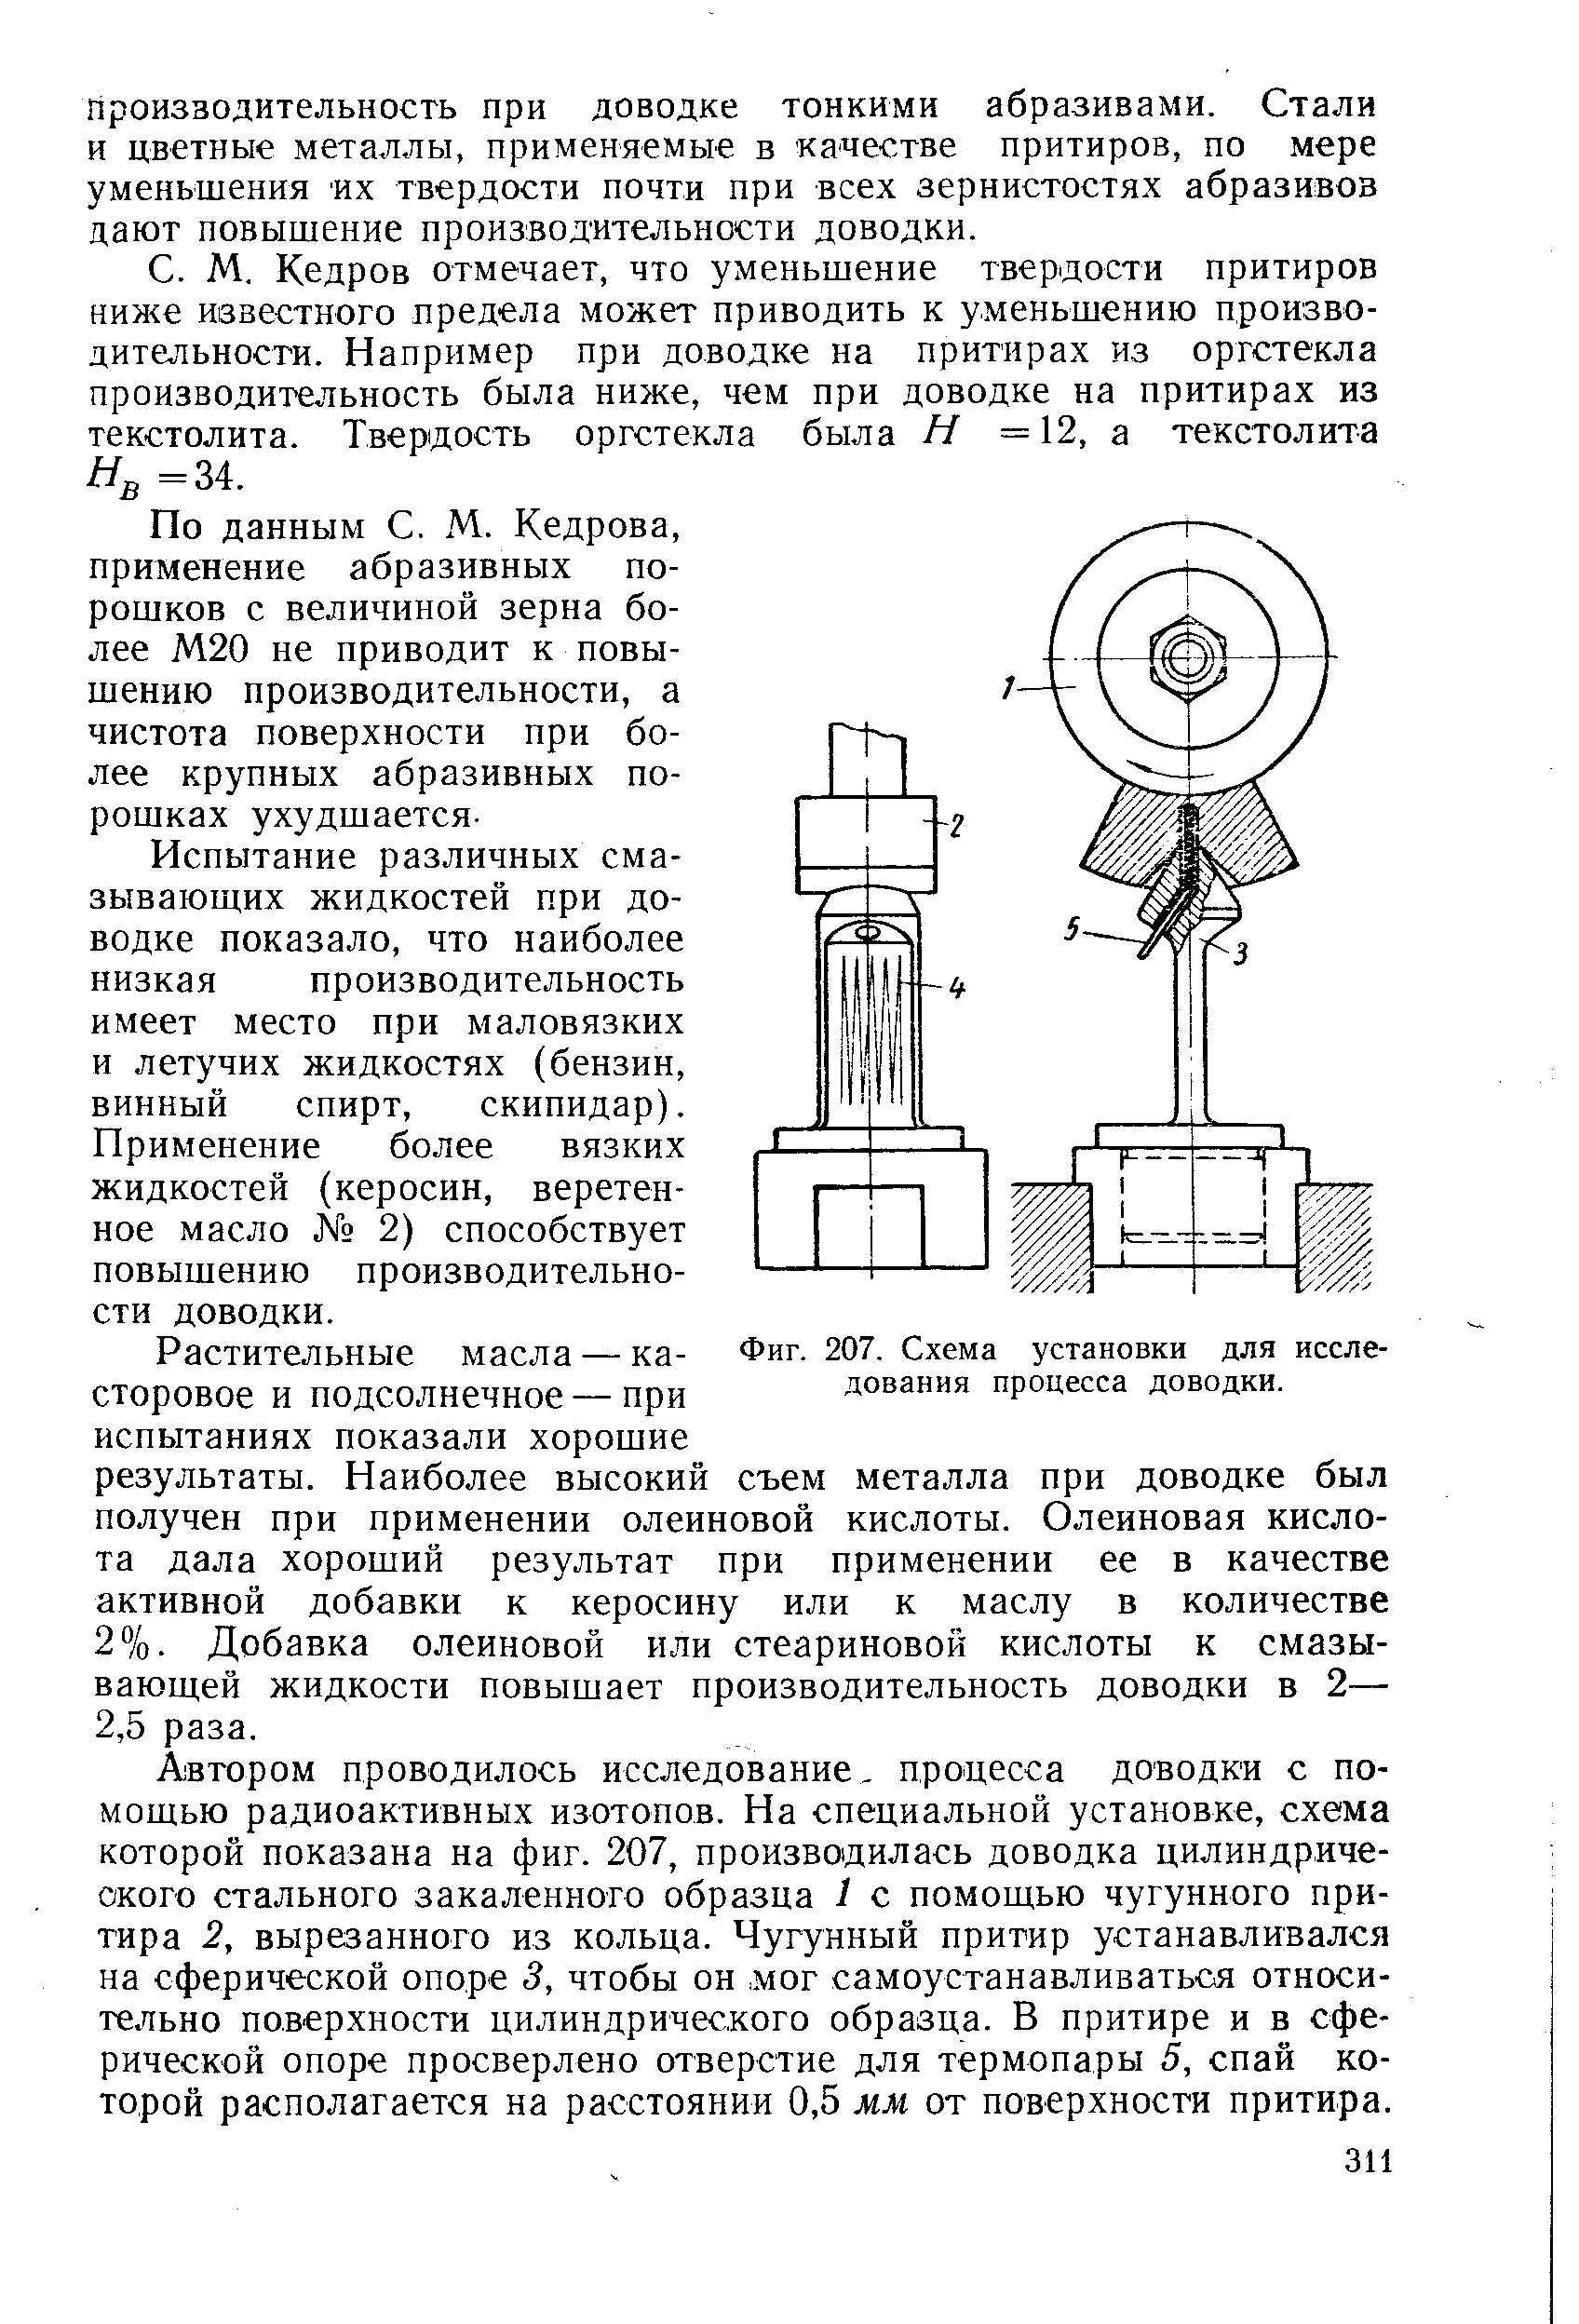 Фиг. 207. Схема установки для исследования процесса доводки.
